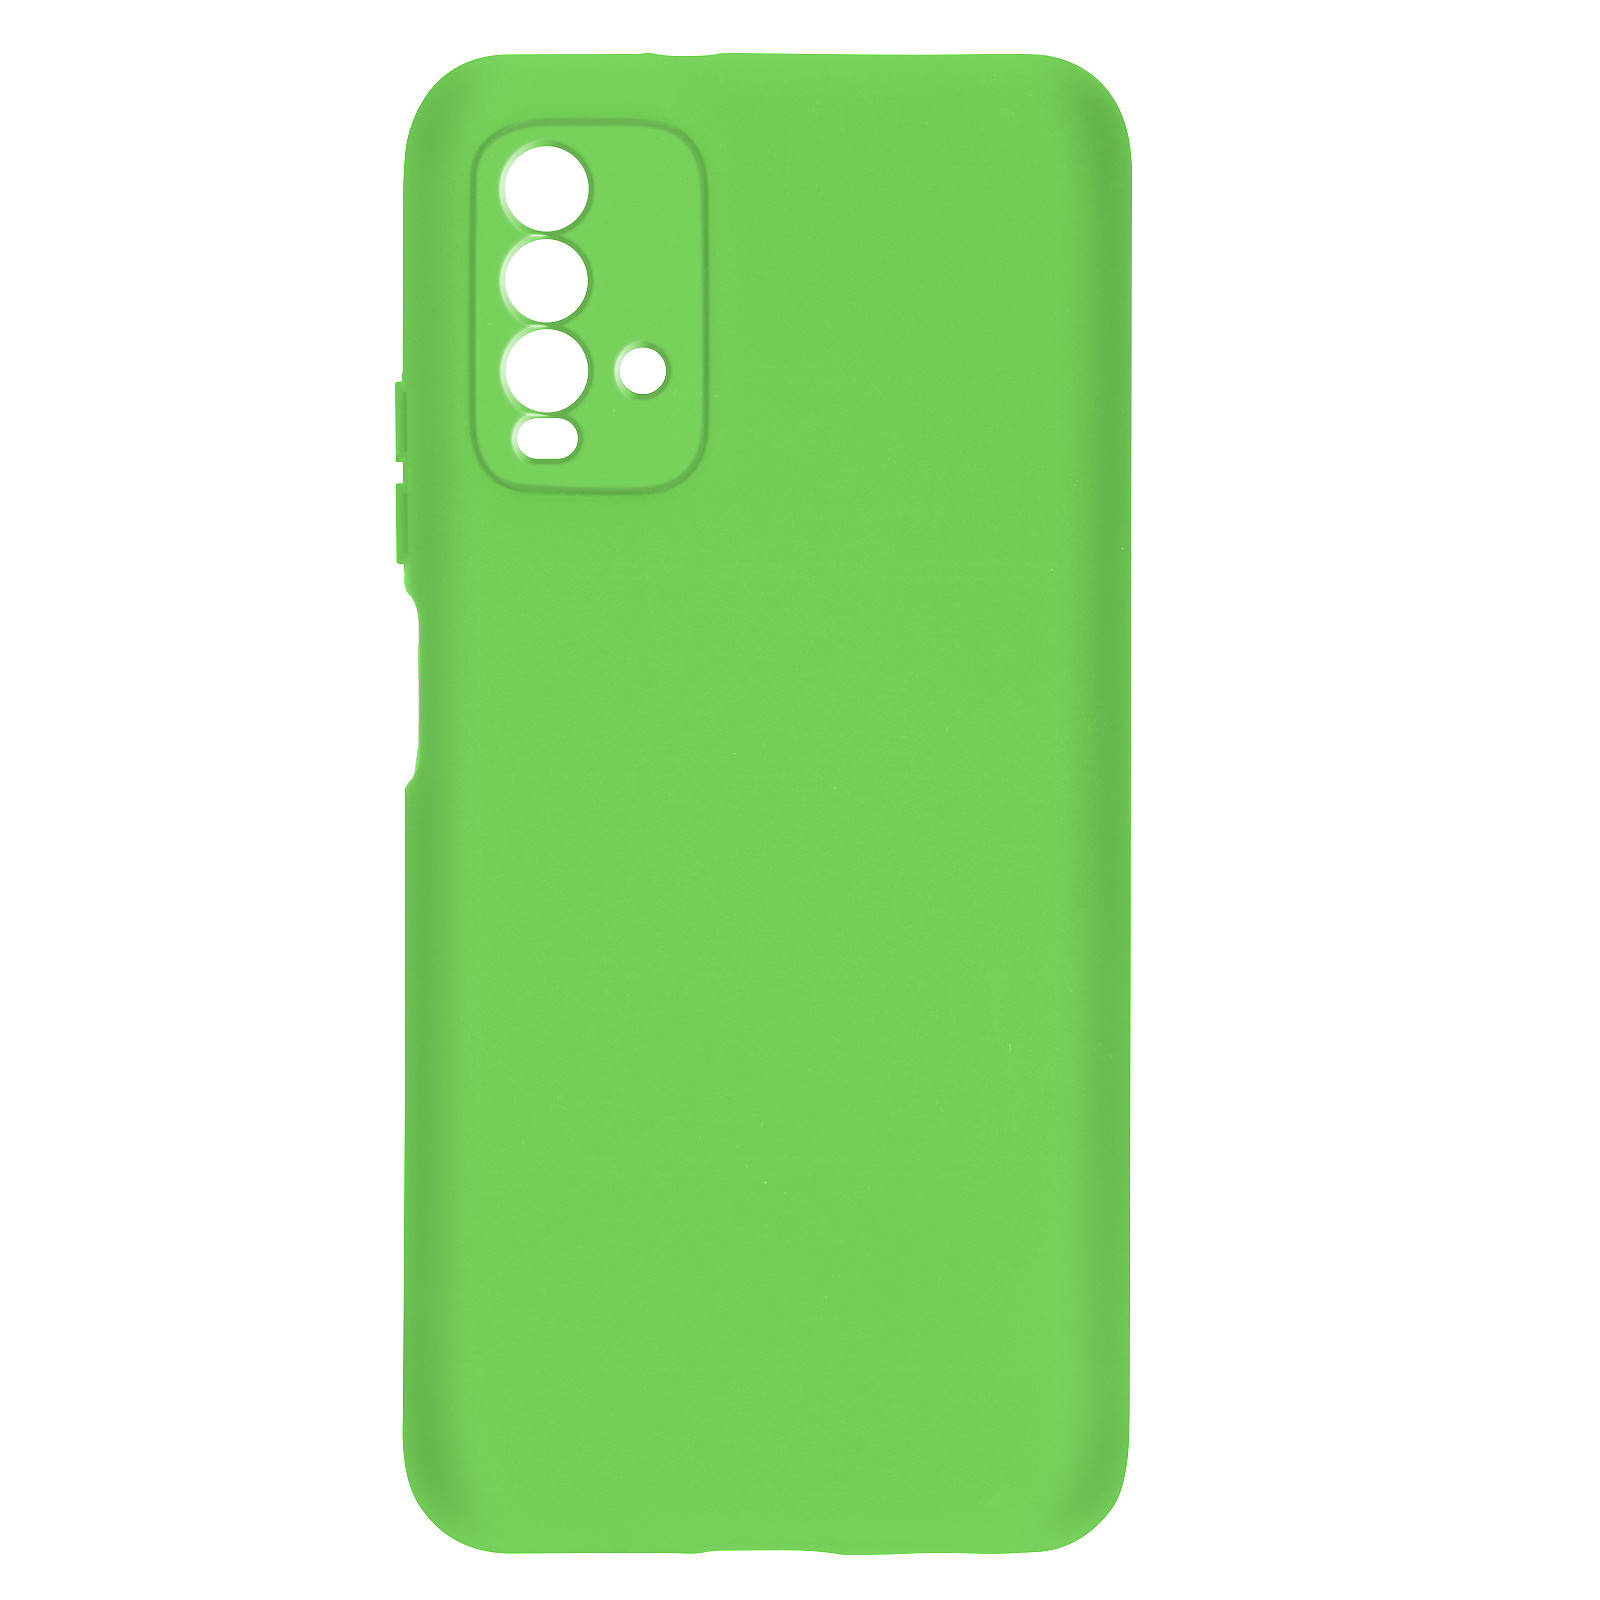 Avizar Coque pour Xiaomi Redmi 9T Silicone Semi-rigide Finition Soft Touch Fine Vert - Coque telephone Avizar